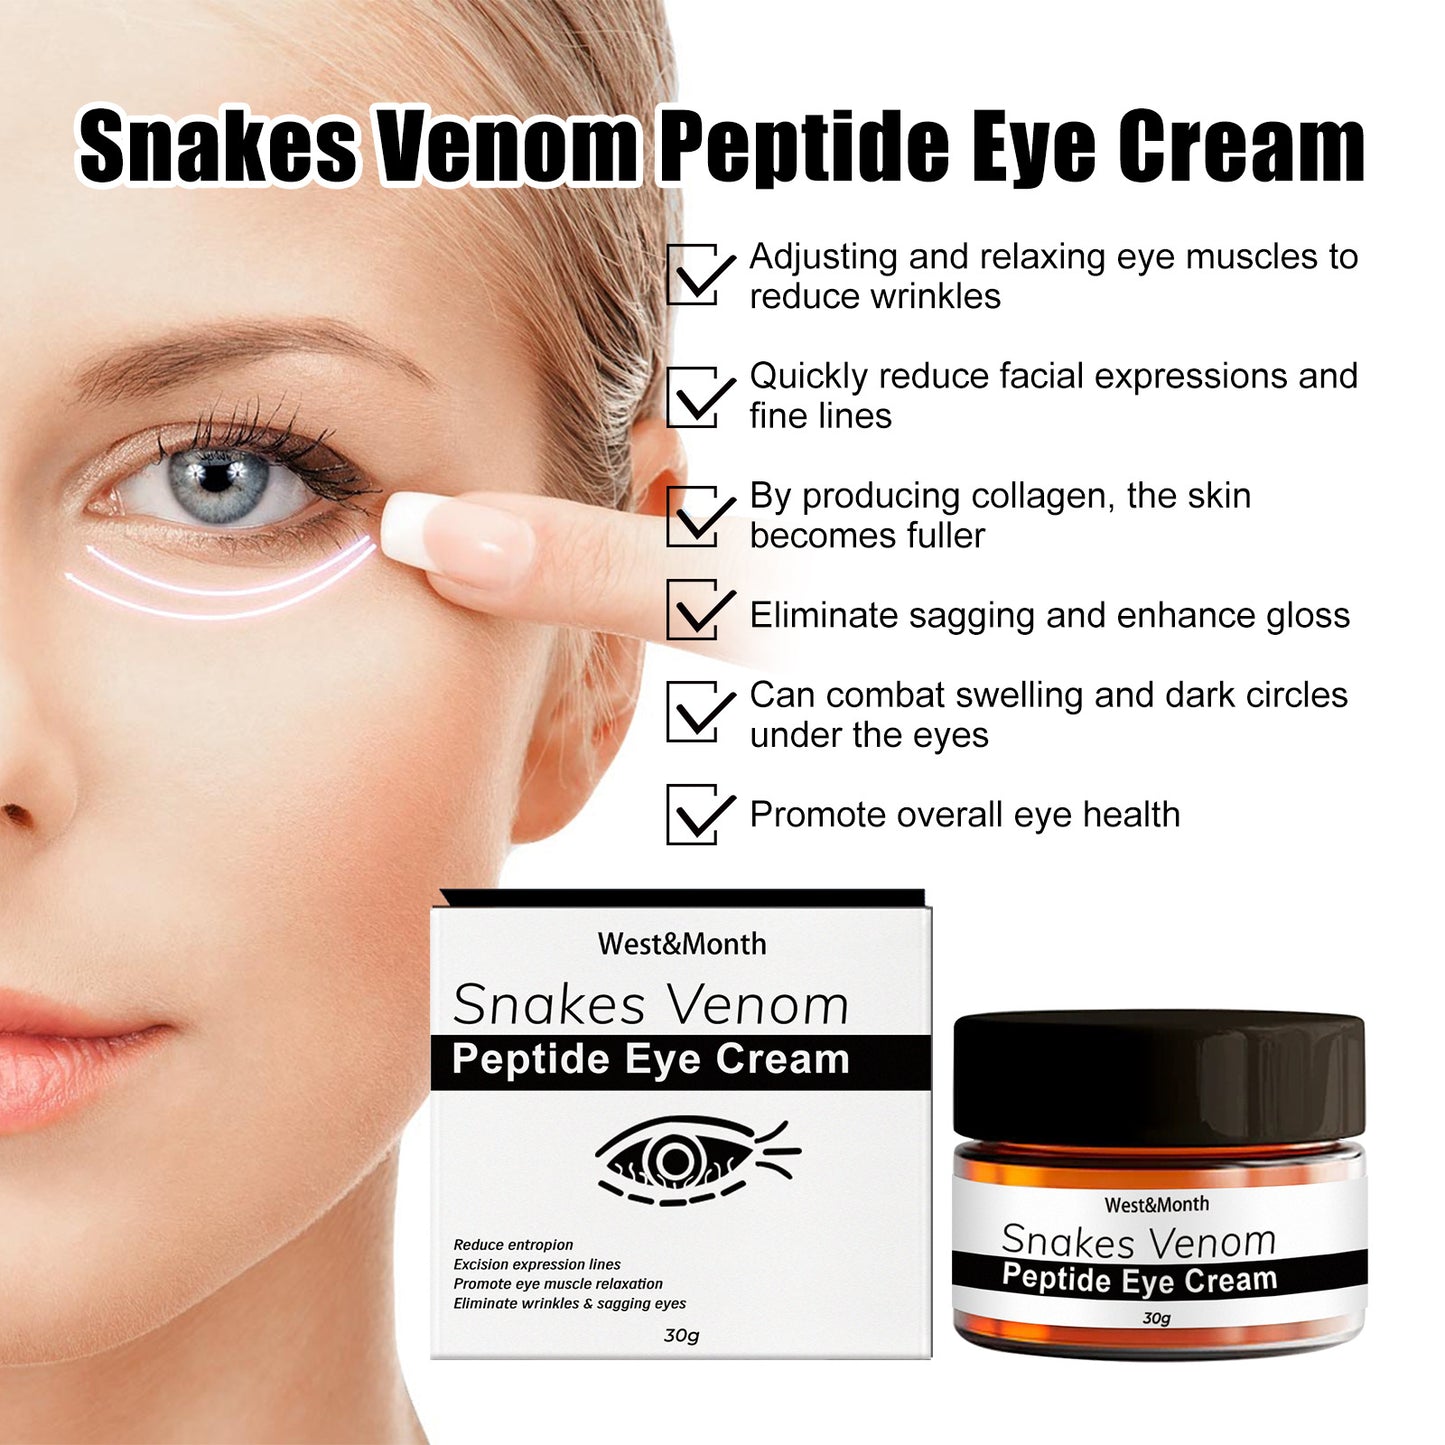 Crema Contorno de Ojos con Péptidos de Veneno de Serpiente: Elimina Bolsas y Ojeras - Tokio Beauty Skin